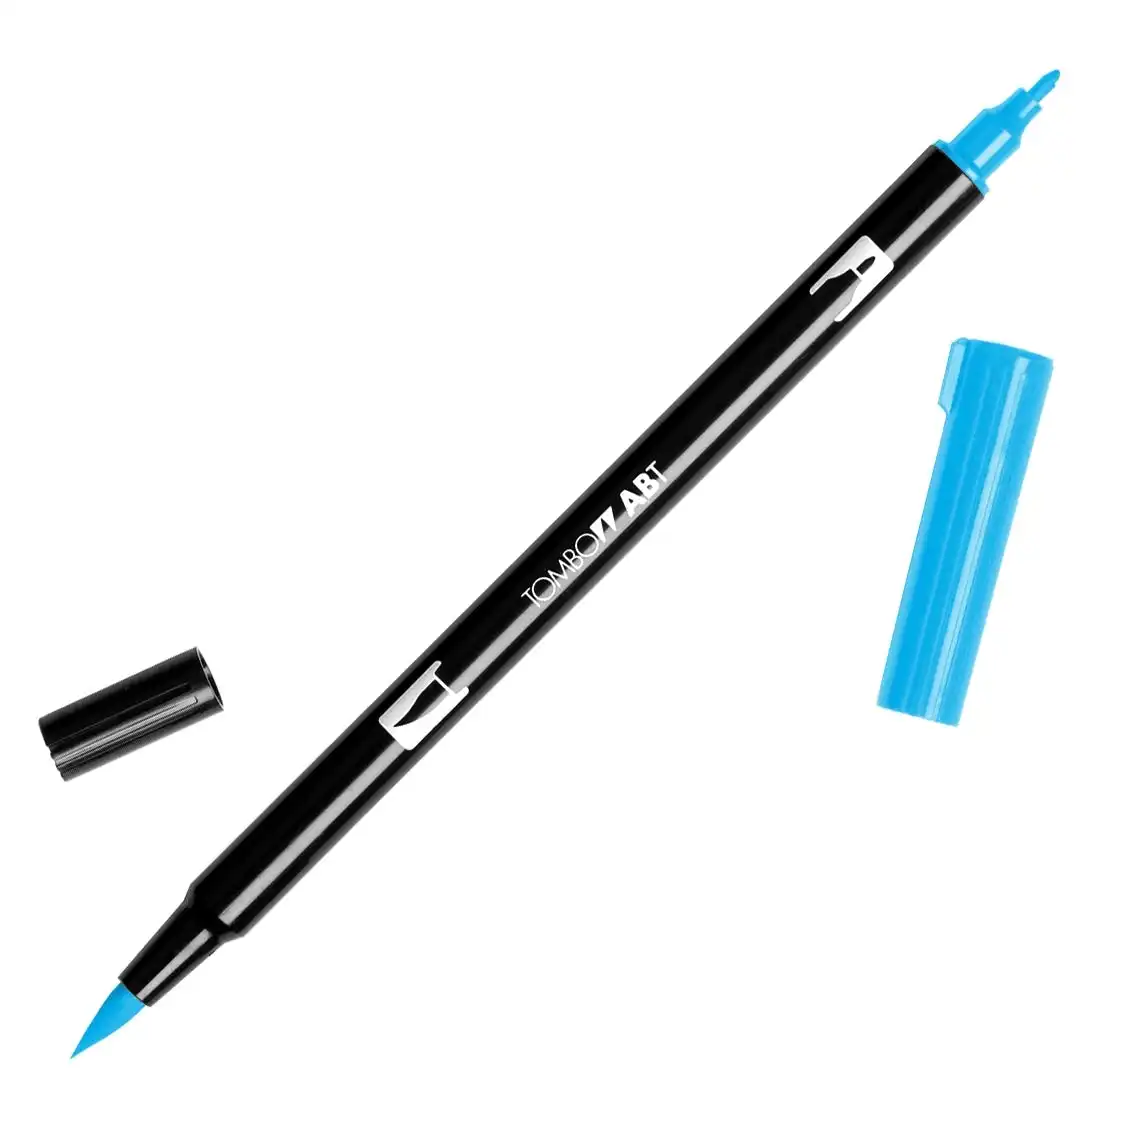 Tombow Dual Brush Pen, 515 Light Blue